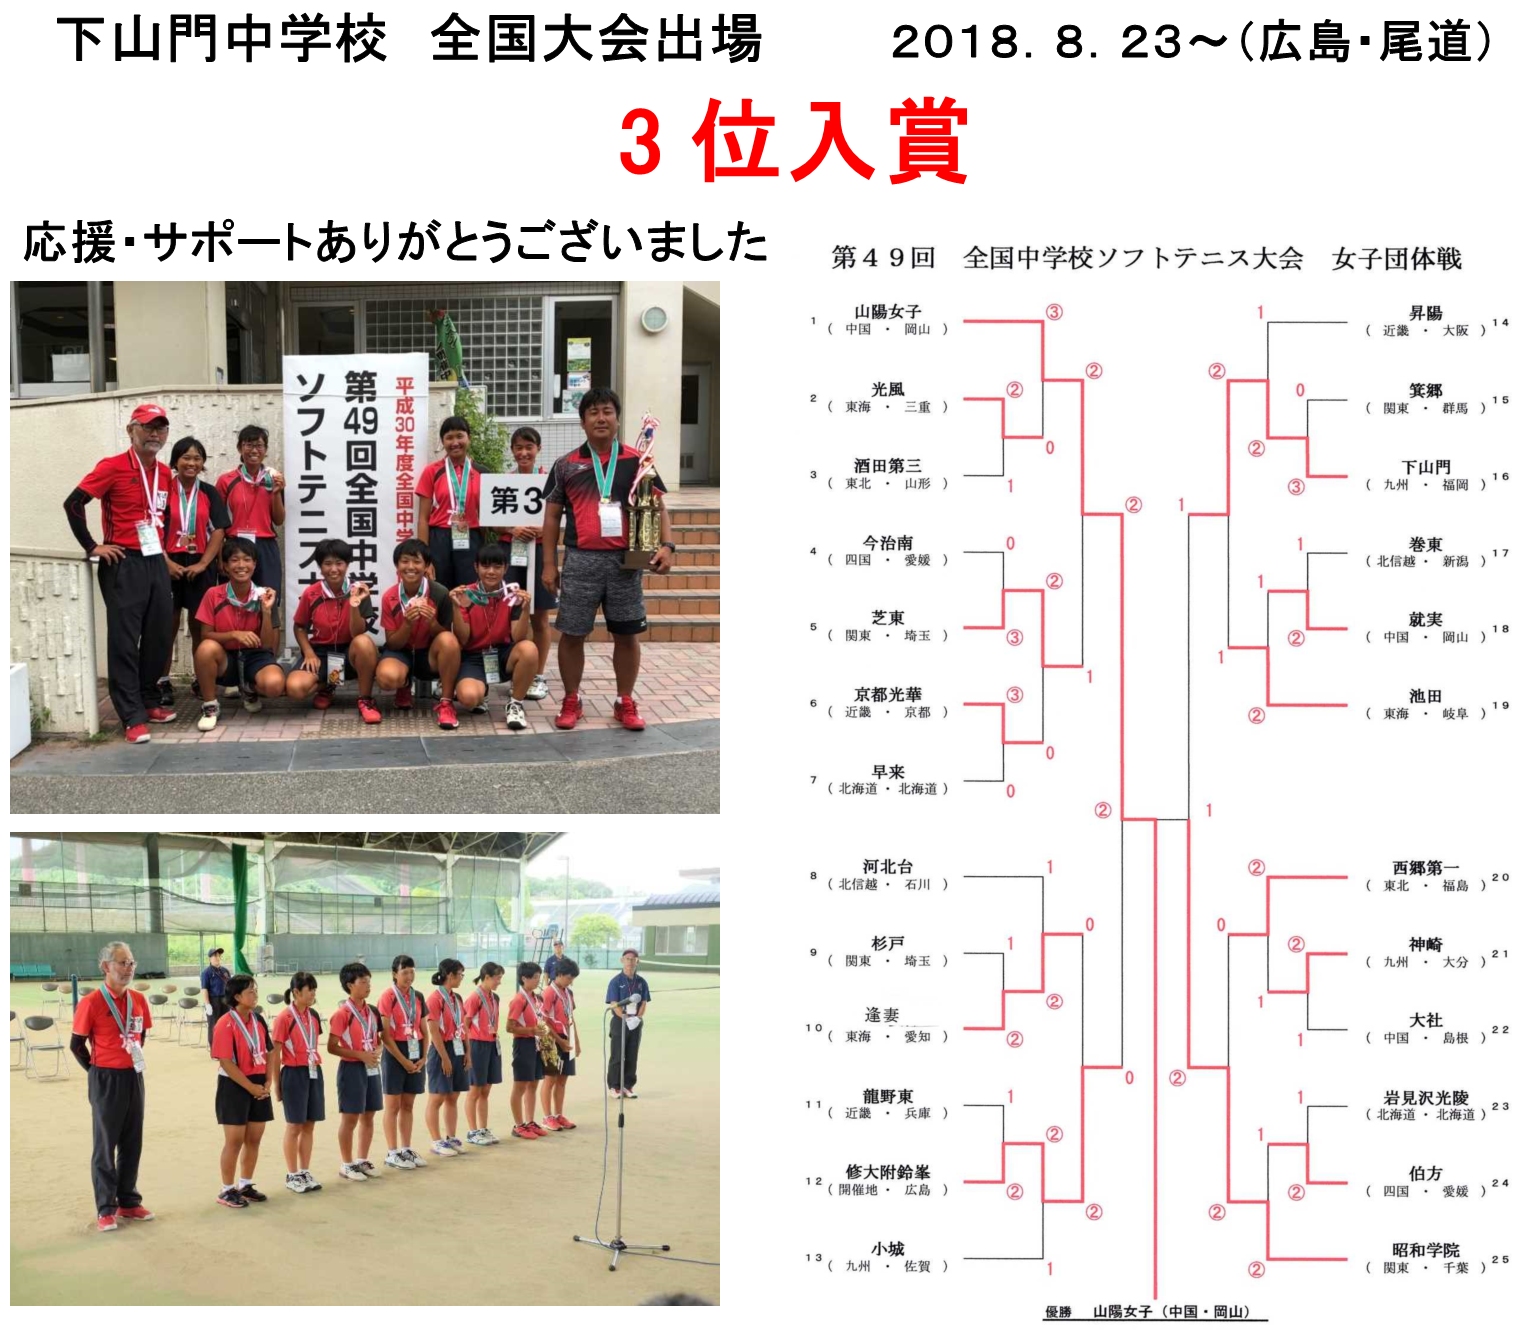 ソフトテニス 大会 中学 2019 関東